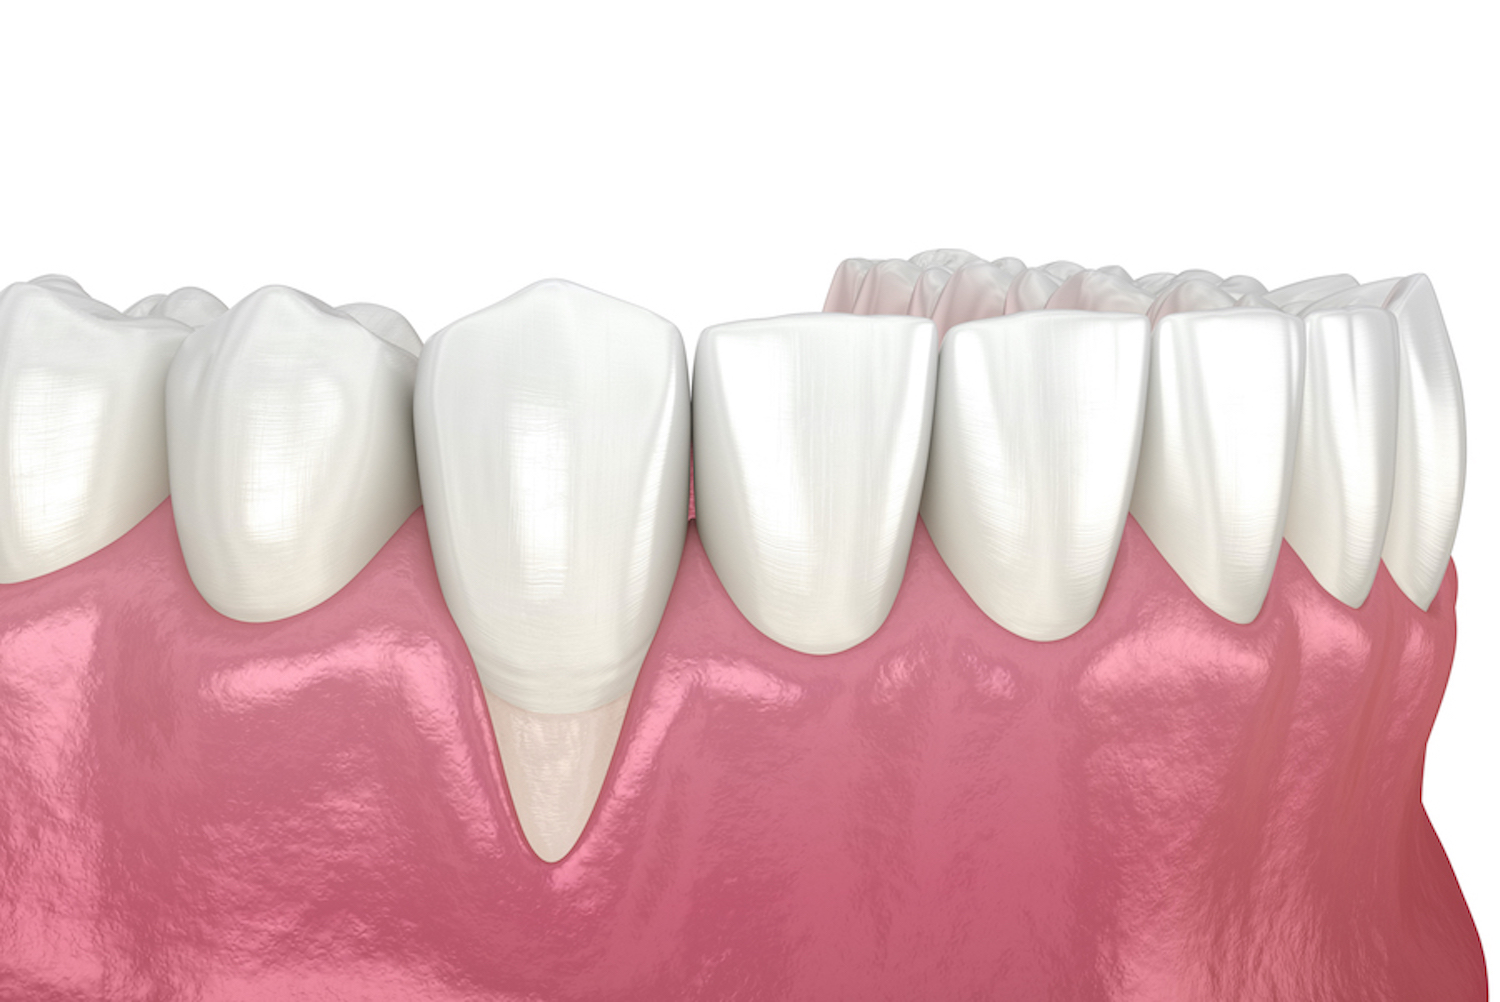 Closeup of receding gums around a loose tooth